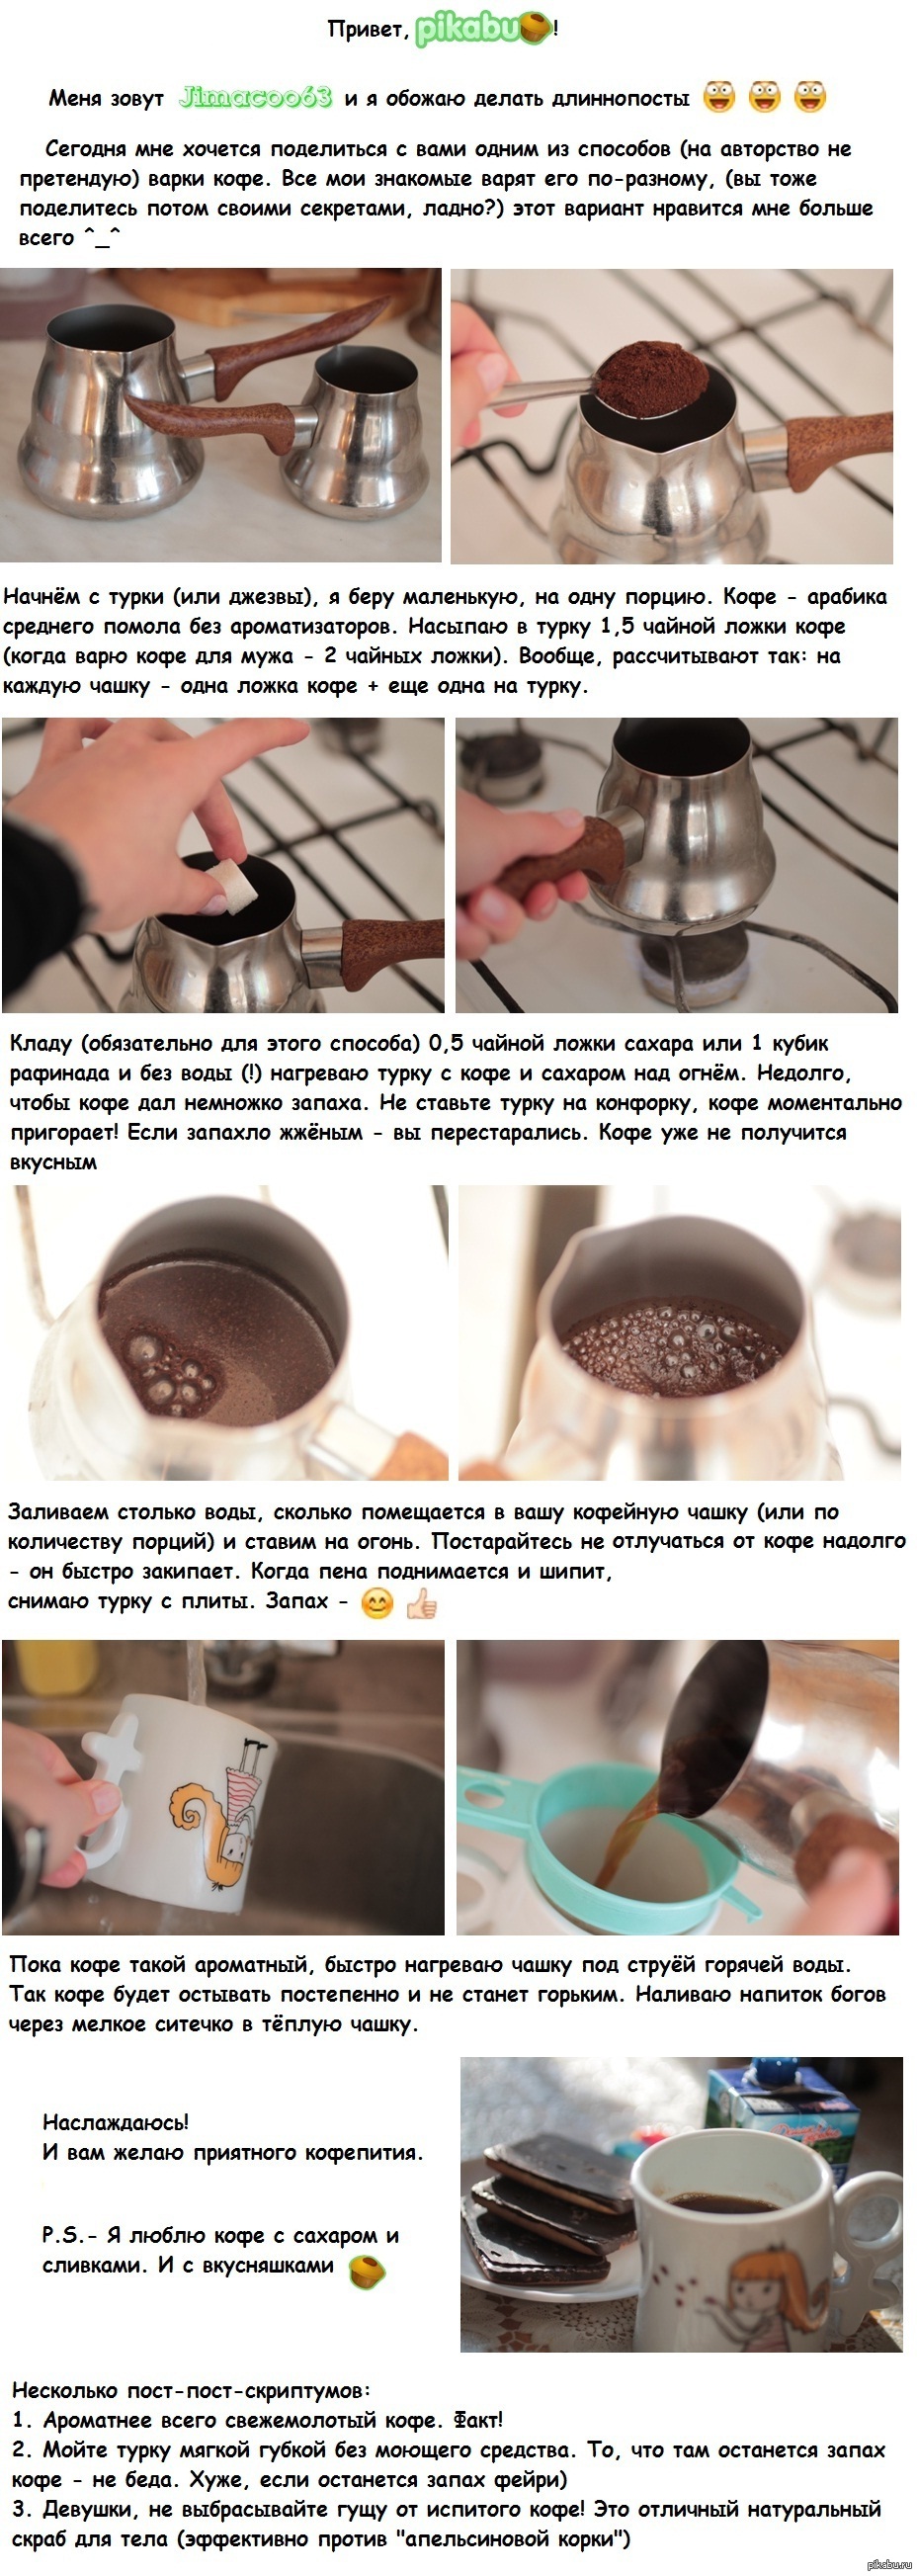 Сварить кофе пропорции. Кофе в турке. Кофе в турке пропорции кофе и воды. Приготовление кофе в турке. Как варить кофе.